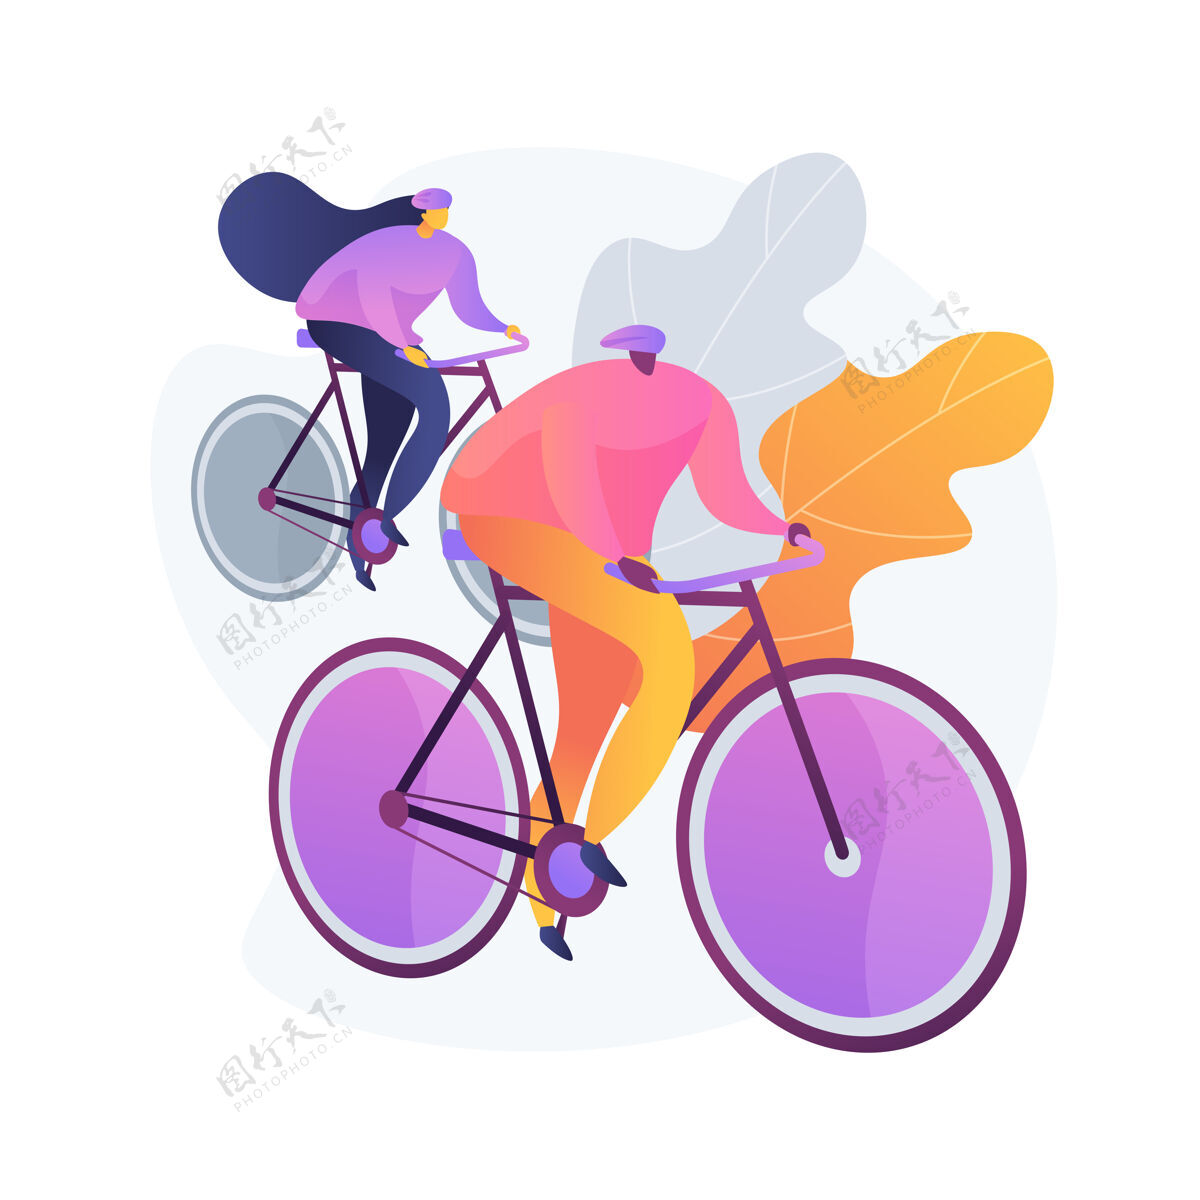 卡通骑自行车的情侣健康的生活方式和健身公路骑手 山上骑手 自行车比赛家庭旅游车辆和交通工具骑手户外活动